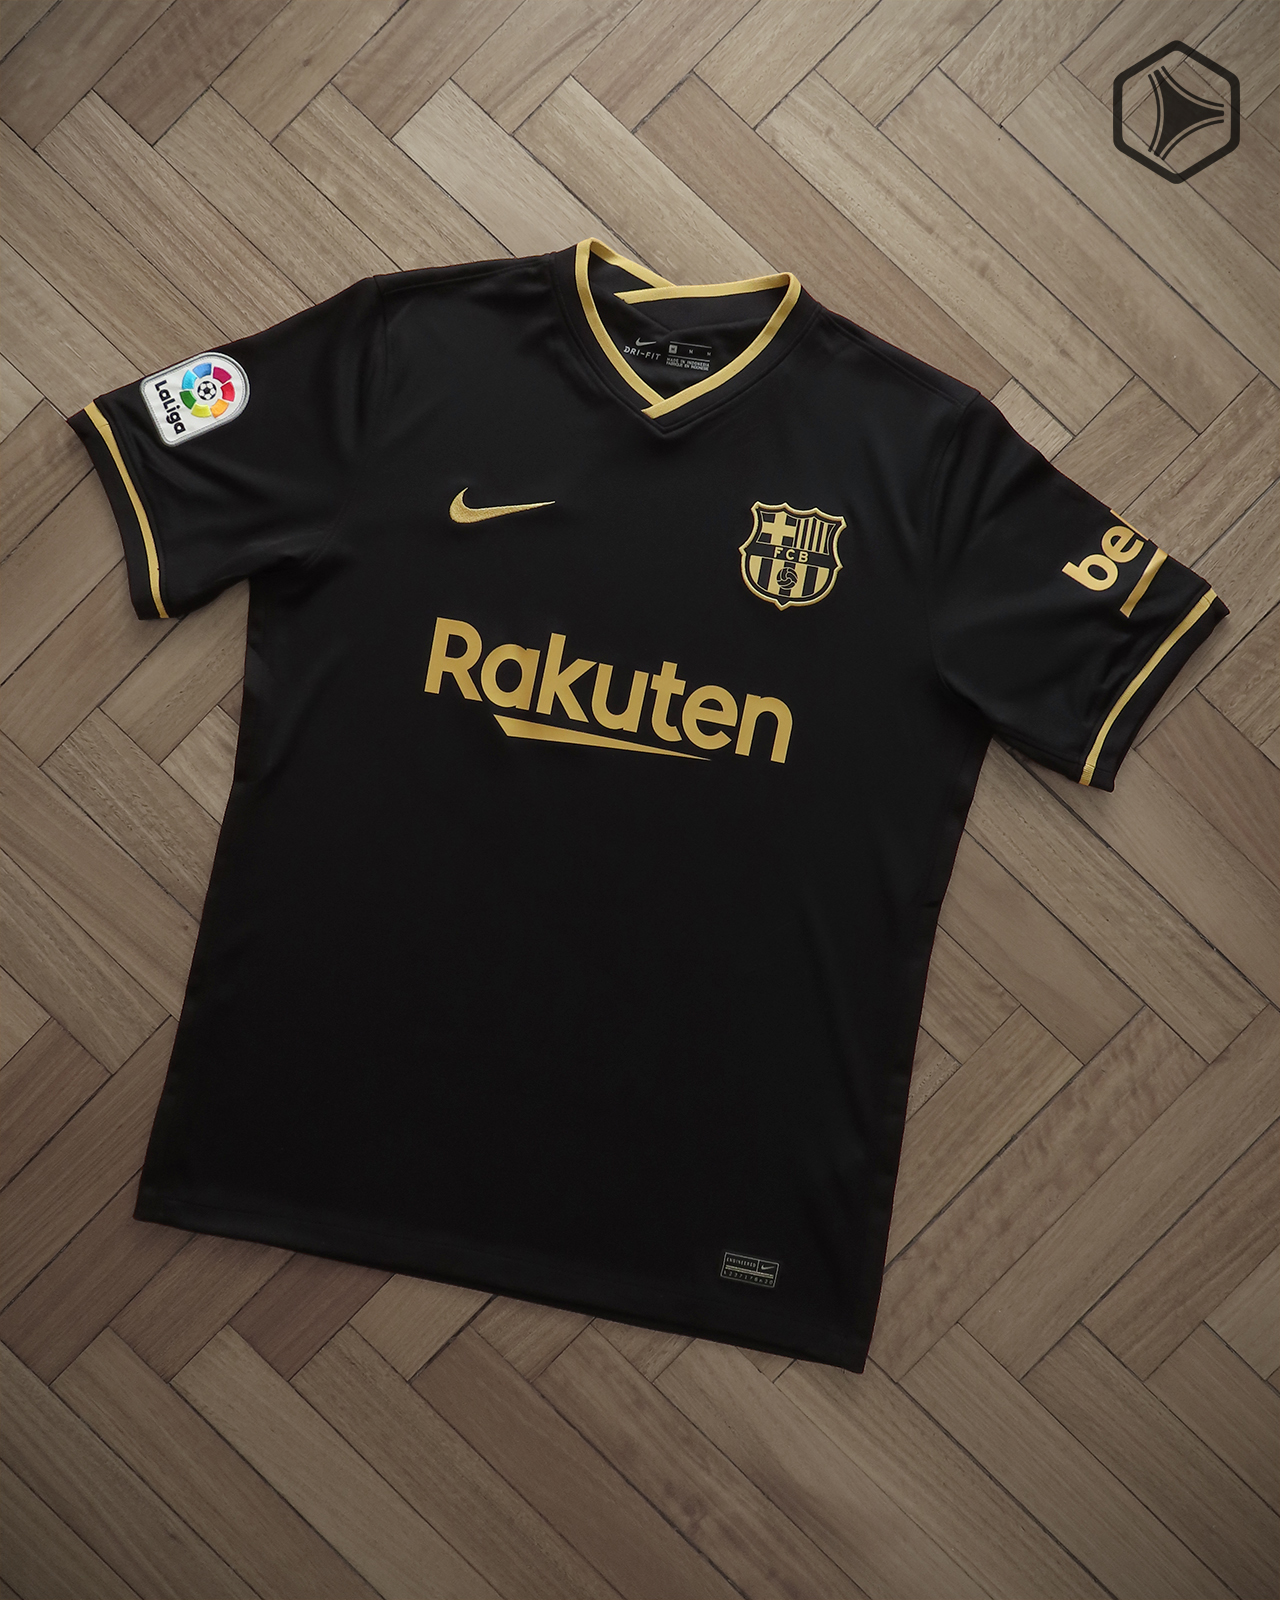 Camiseta alternativa Nike del FC Barcelona 2020 2021